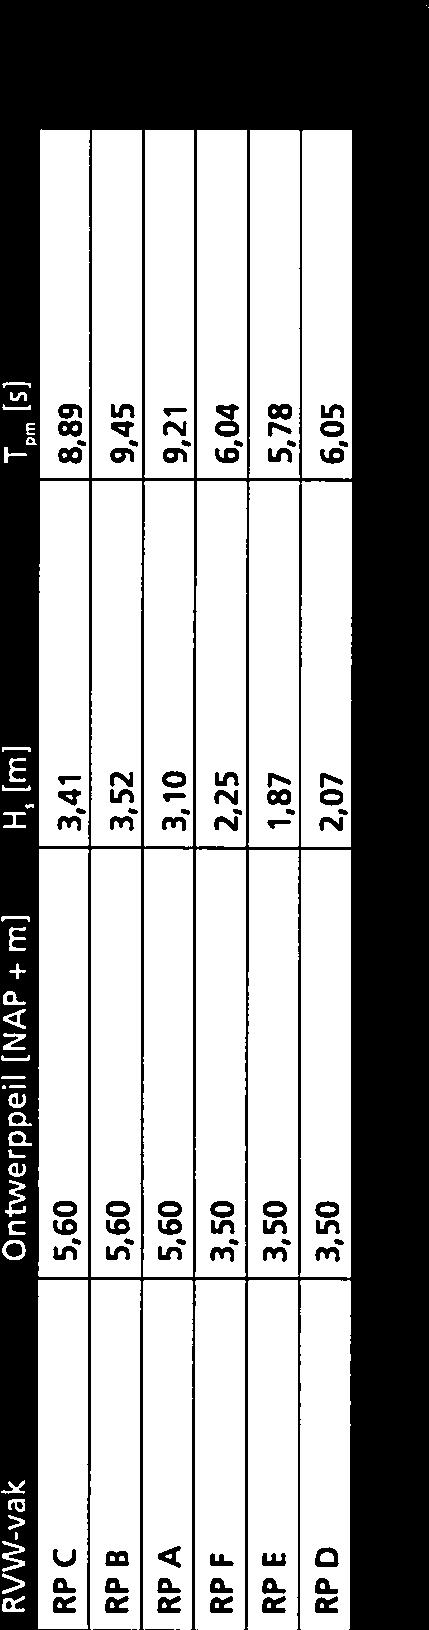 De indeling in randvoorwaardenvakken is ook weergegeven in Figuur 2 in Bijlage 2.